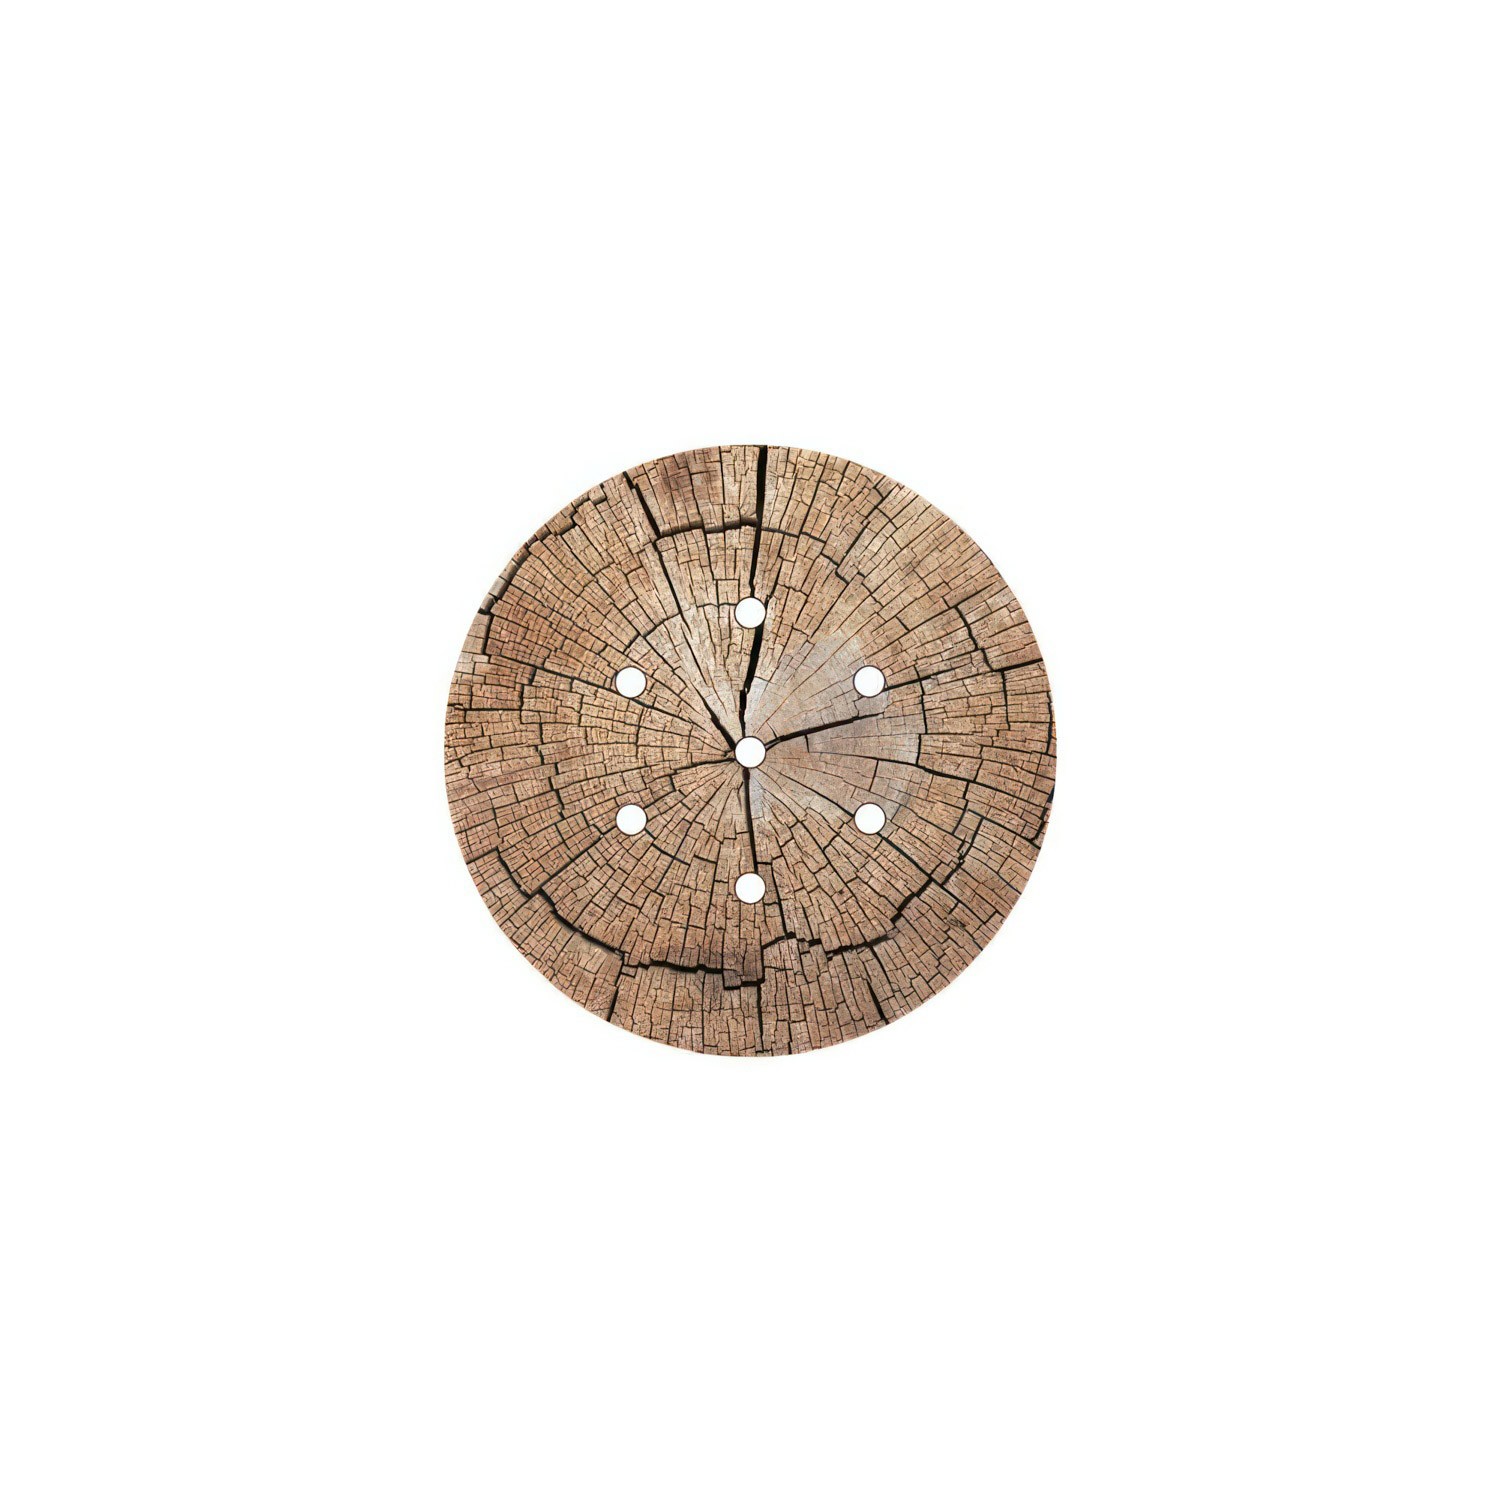 Rundes 7-Loch und 4 Seitenlöchern Lampenbaldachin, Rose-One-Abdeckung, 200 mm Durchmesser- PROMO